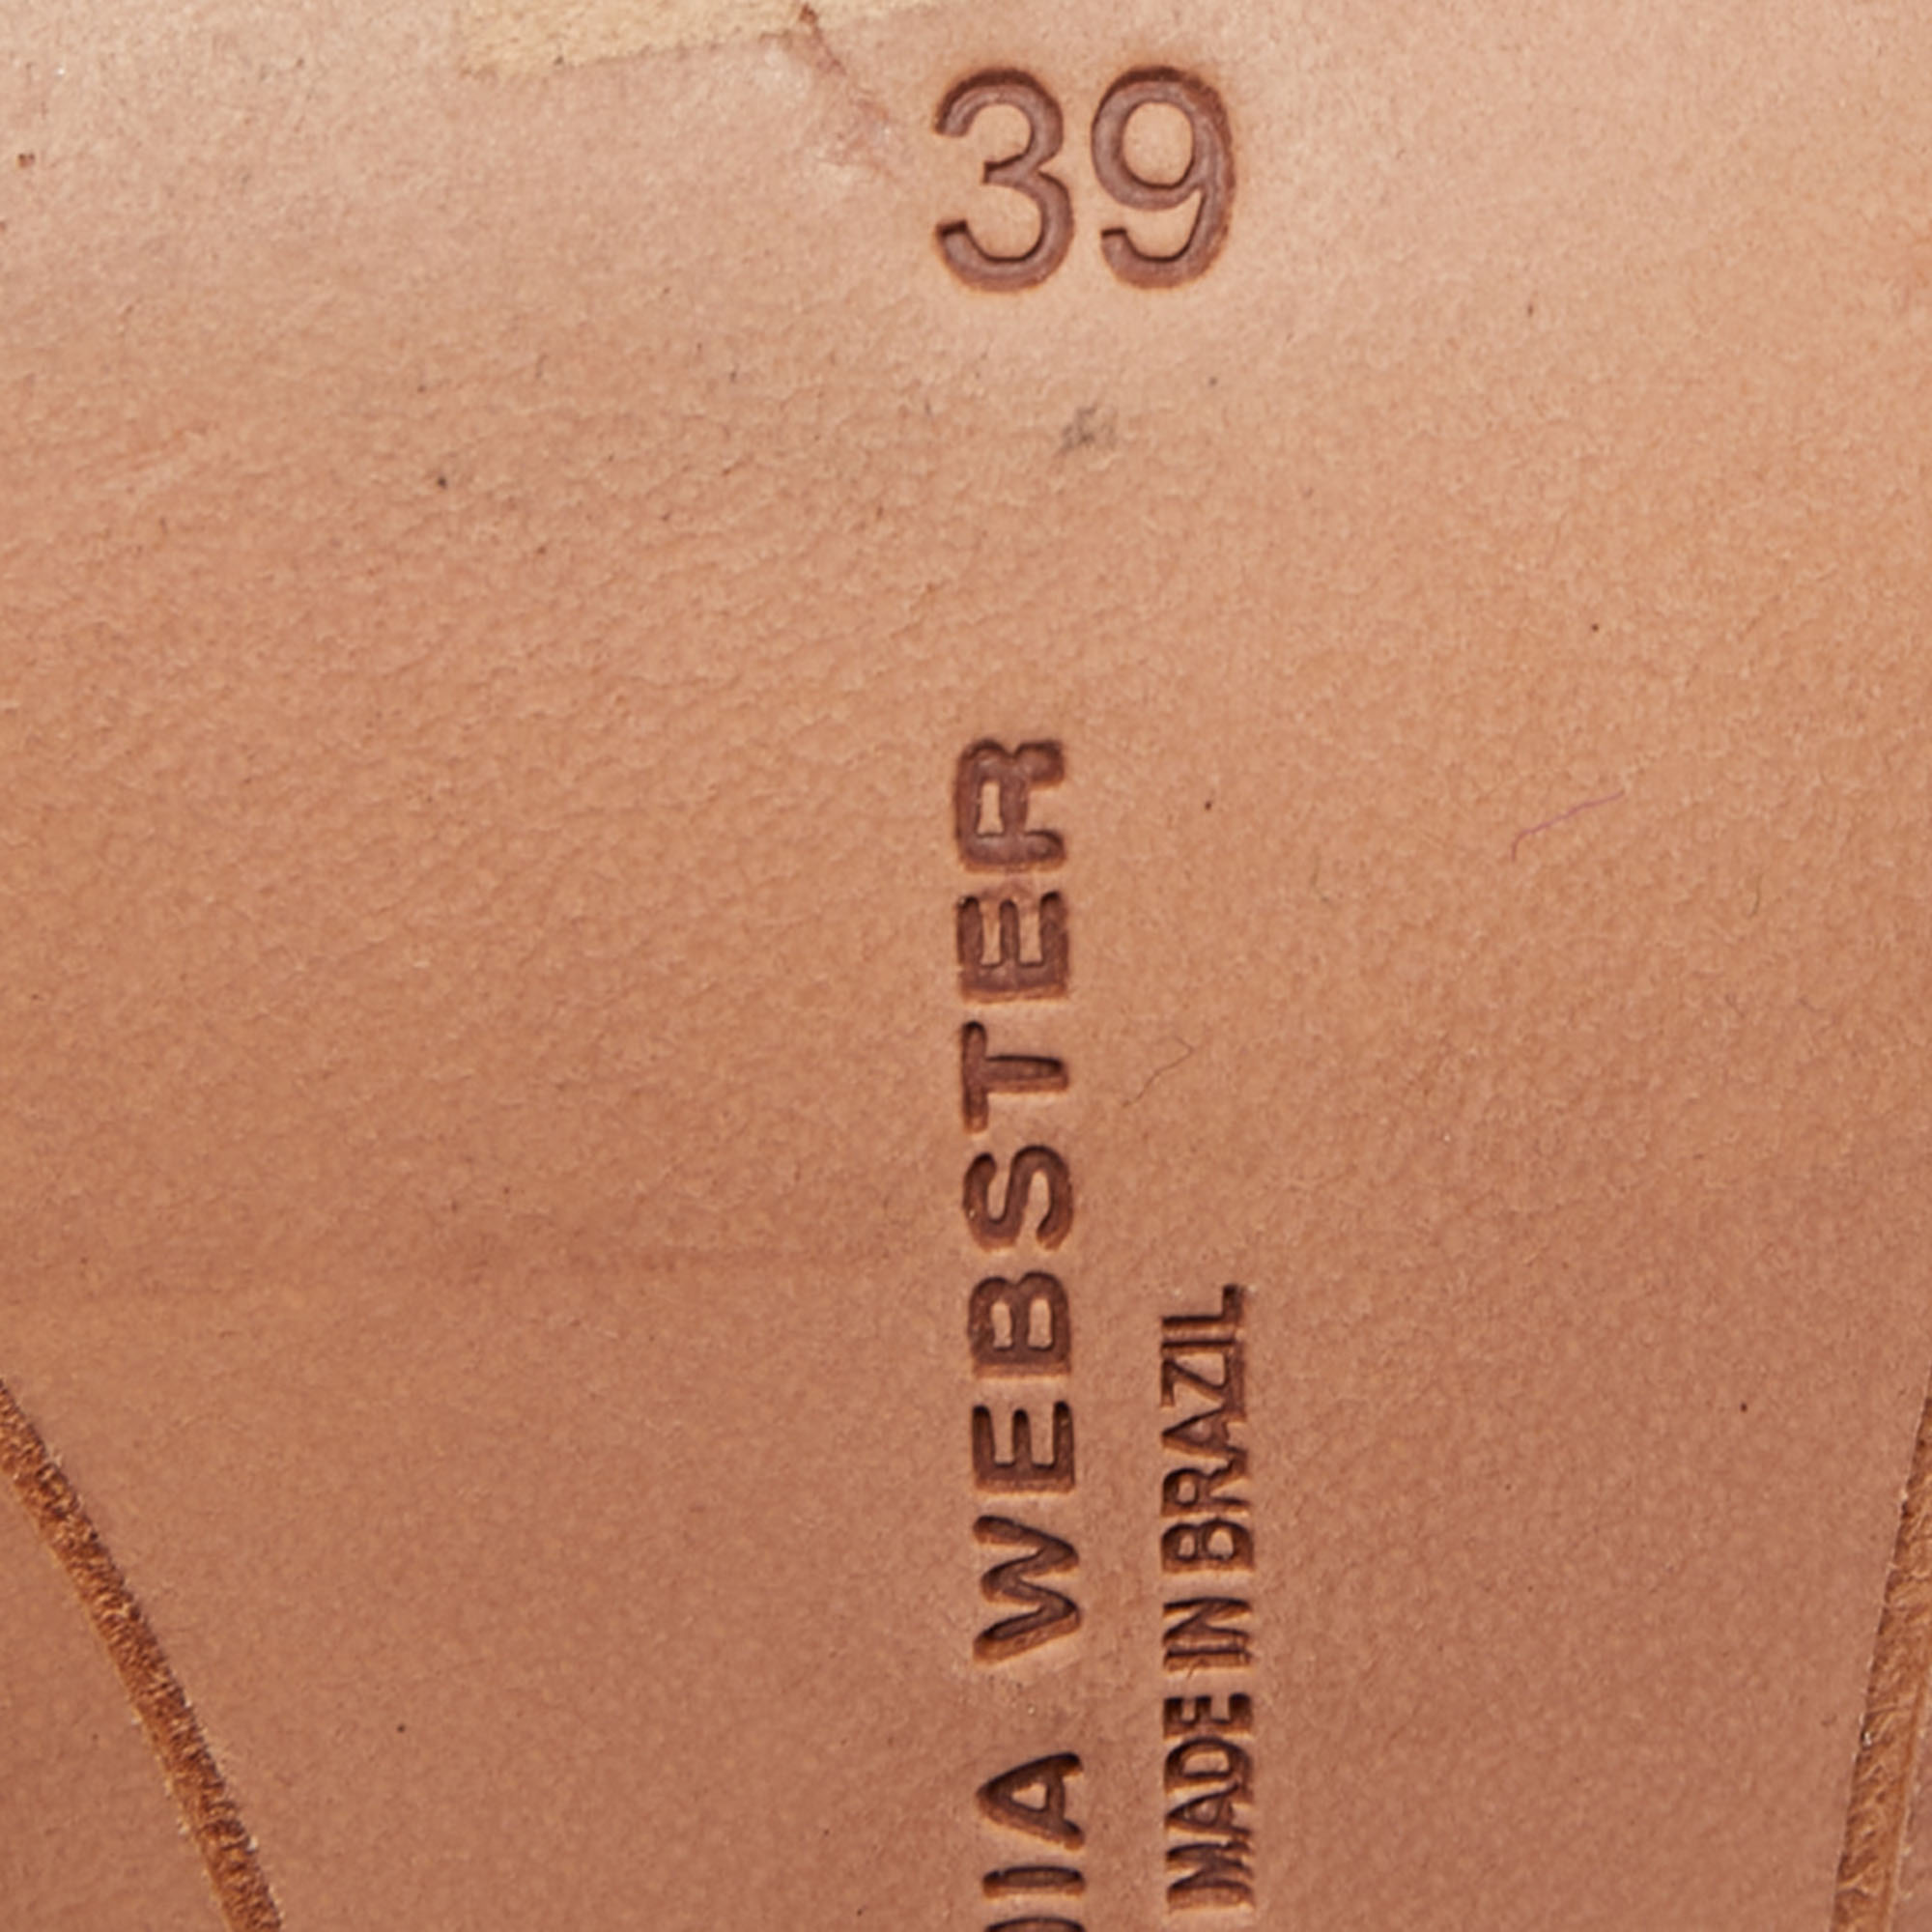 Sophia Webster Leather Layla Pom Pom Embellished T-Strap Sandals Size 39